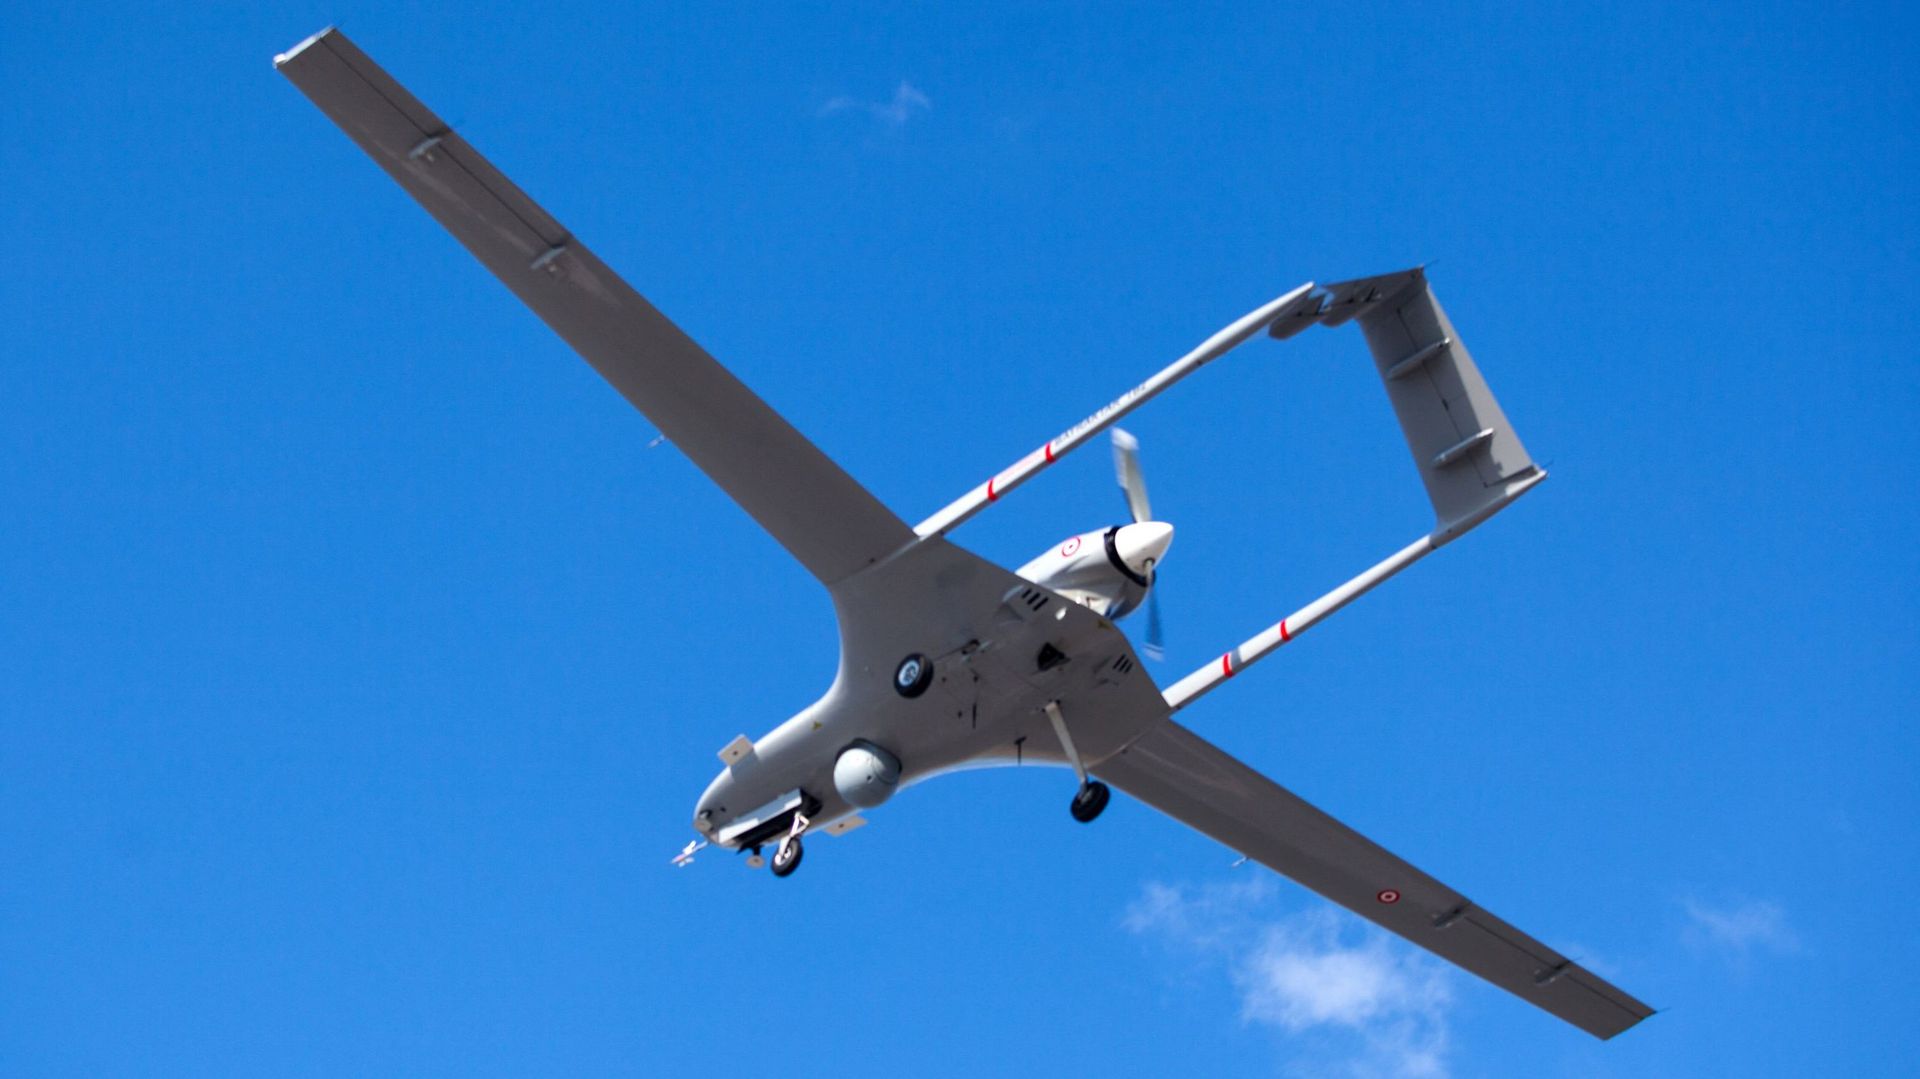 Un drone Bayraktar TB2 de fabrication turque vole sur la base aérienne militaire de Gecitkale, près de Famagouste, dans la République turque autoproclamée de Chypre du Nord (RTCN), le 16 décembre 2019. – Le drone militaire turc a été livré au nord de Chyp